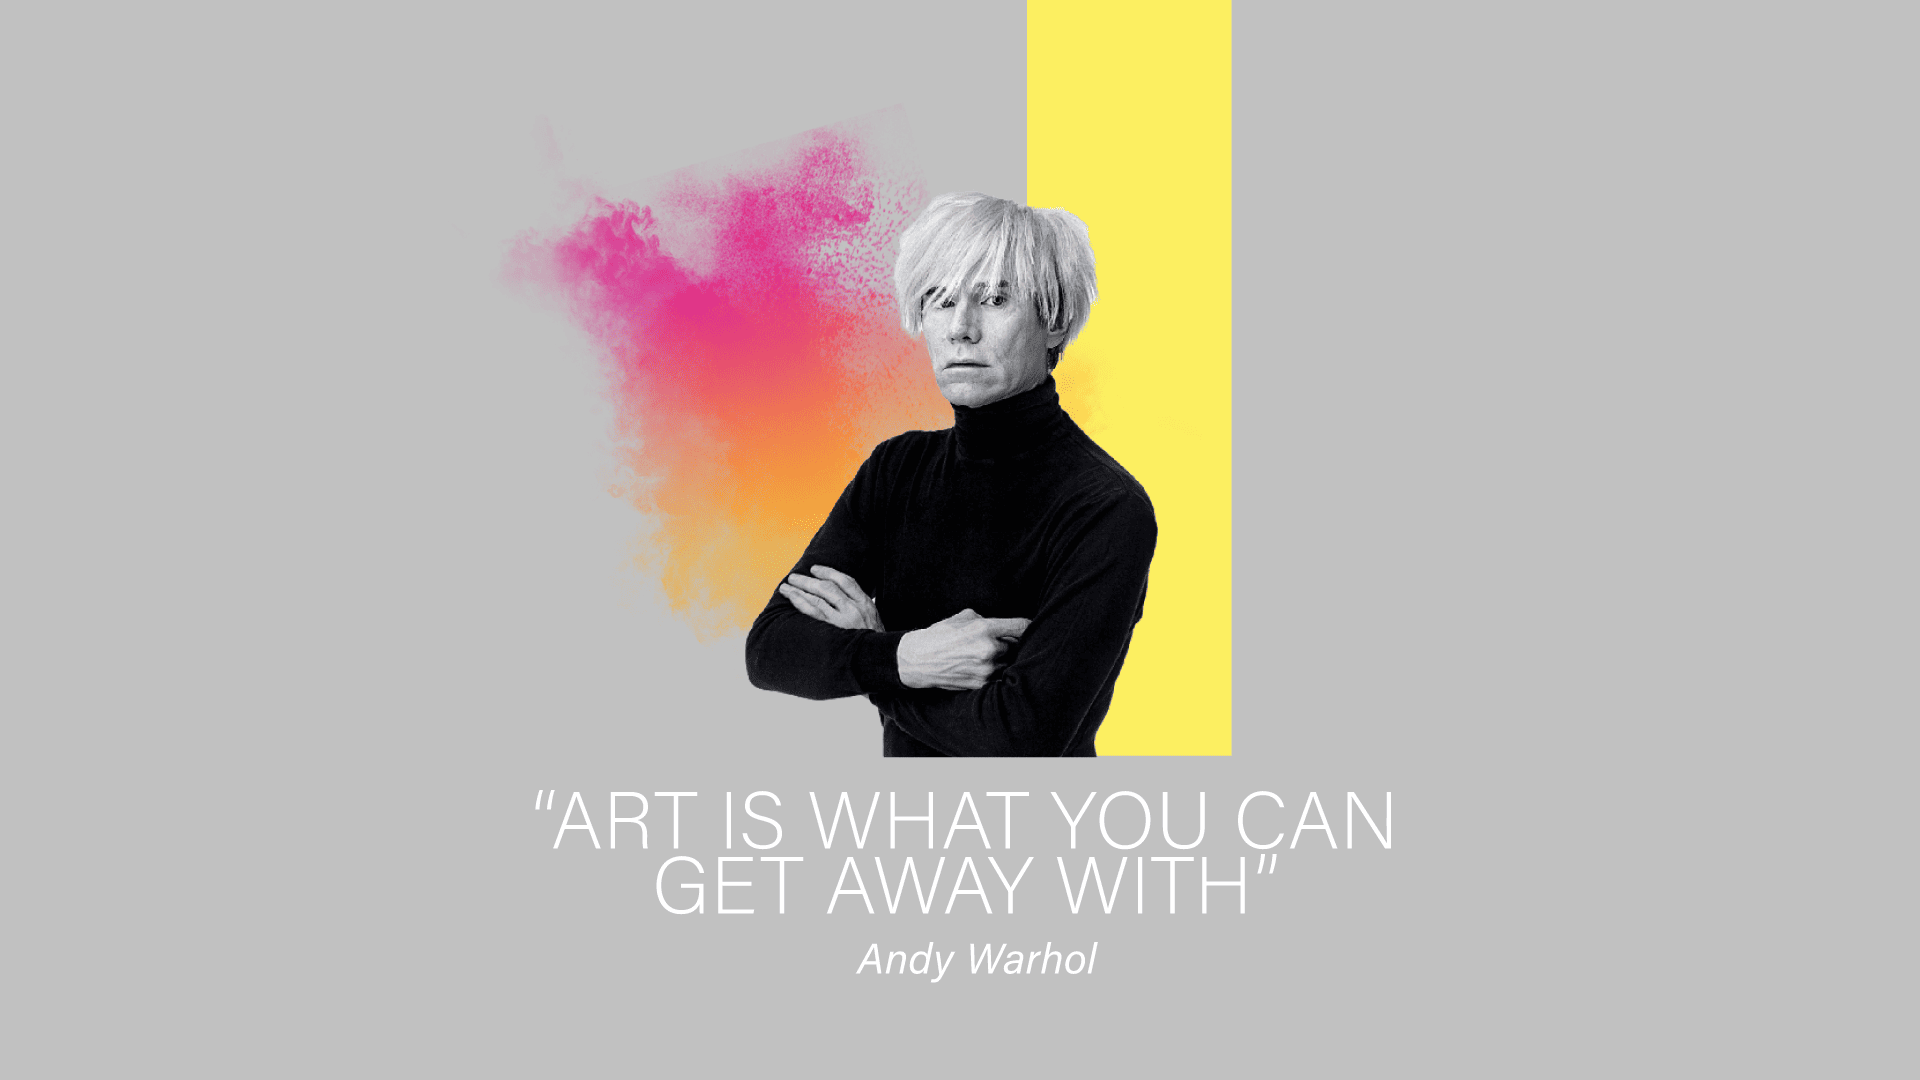 Αιώνια έμπνευση απο τον Andy Warhol